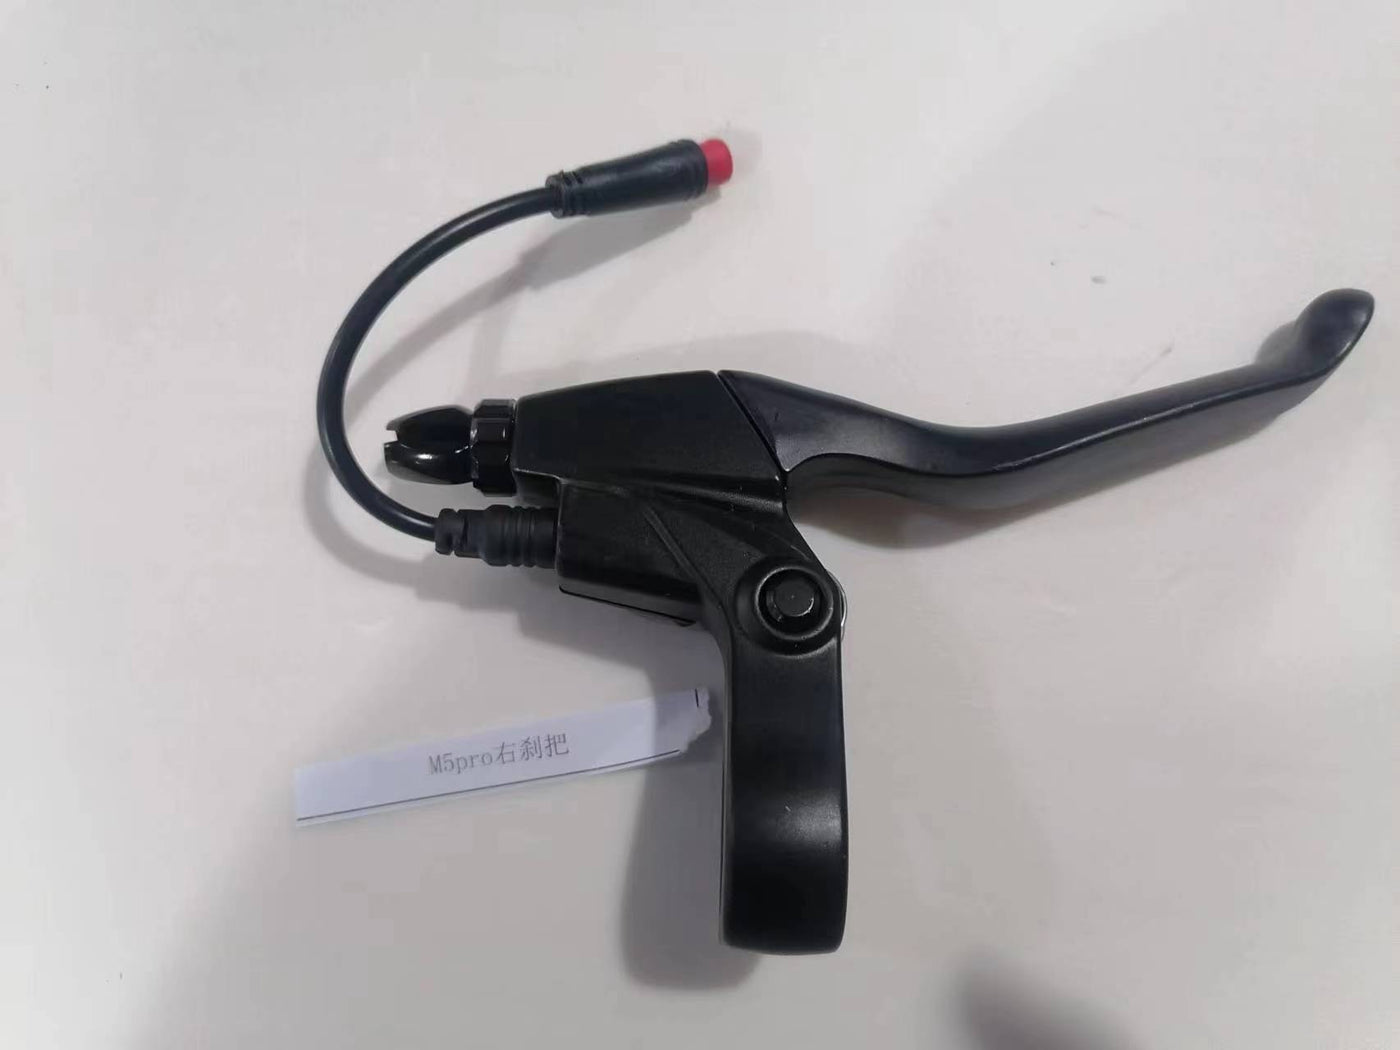 Piezas de repuesto para KUKIRIN M5 Pro Scooter eléctrico